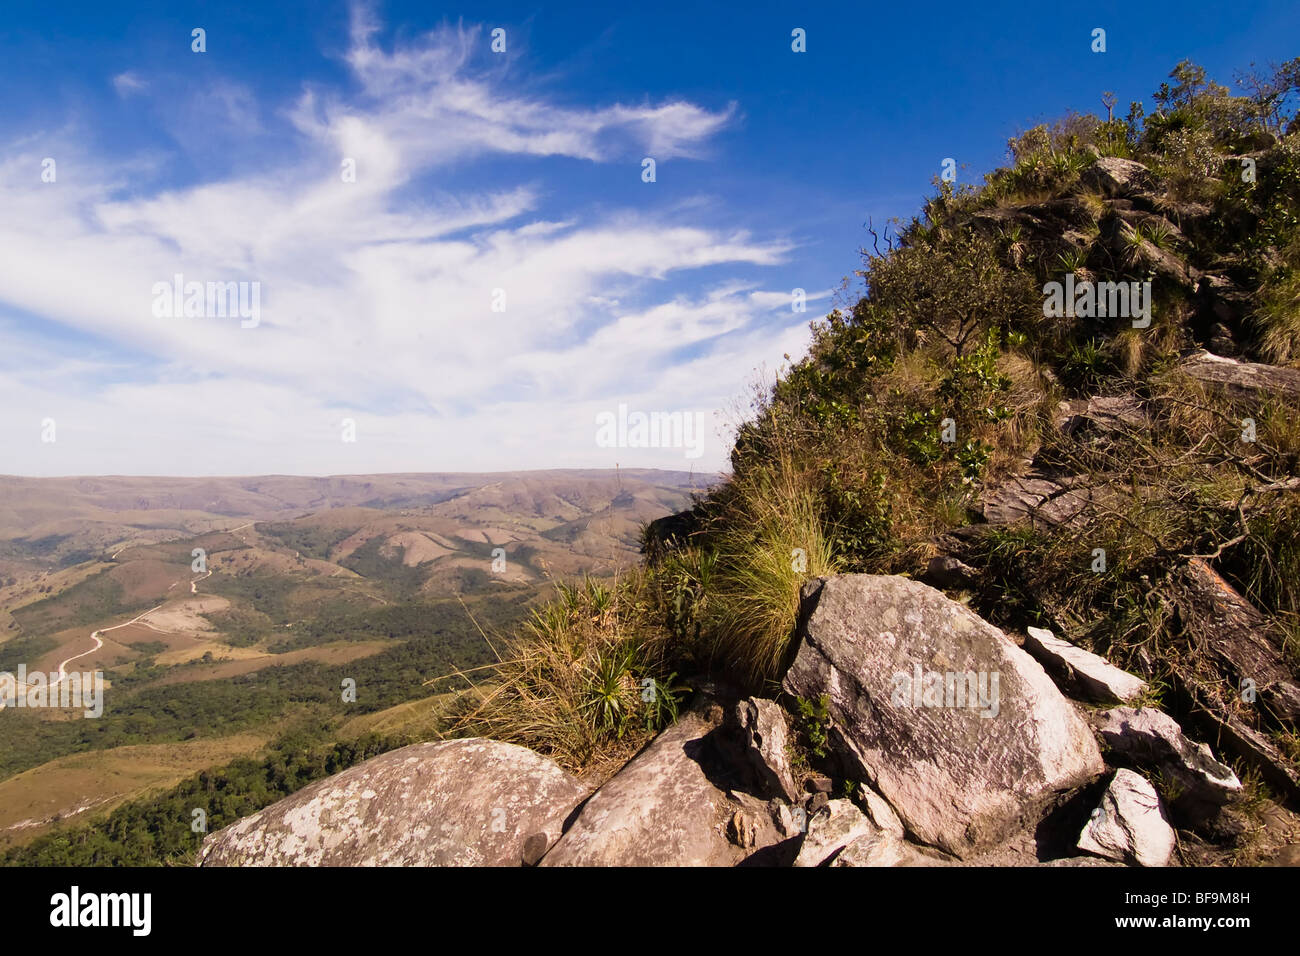 National Park Serra da Canastra; Minas Gerais, Brazil Stock Photo